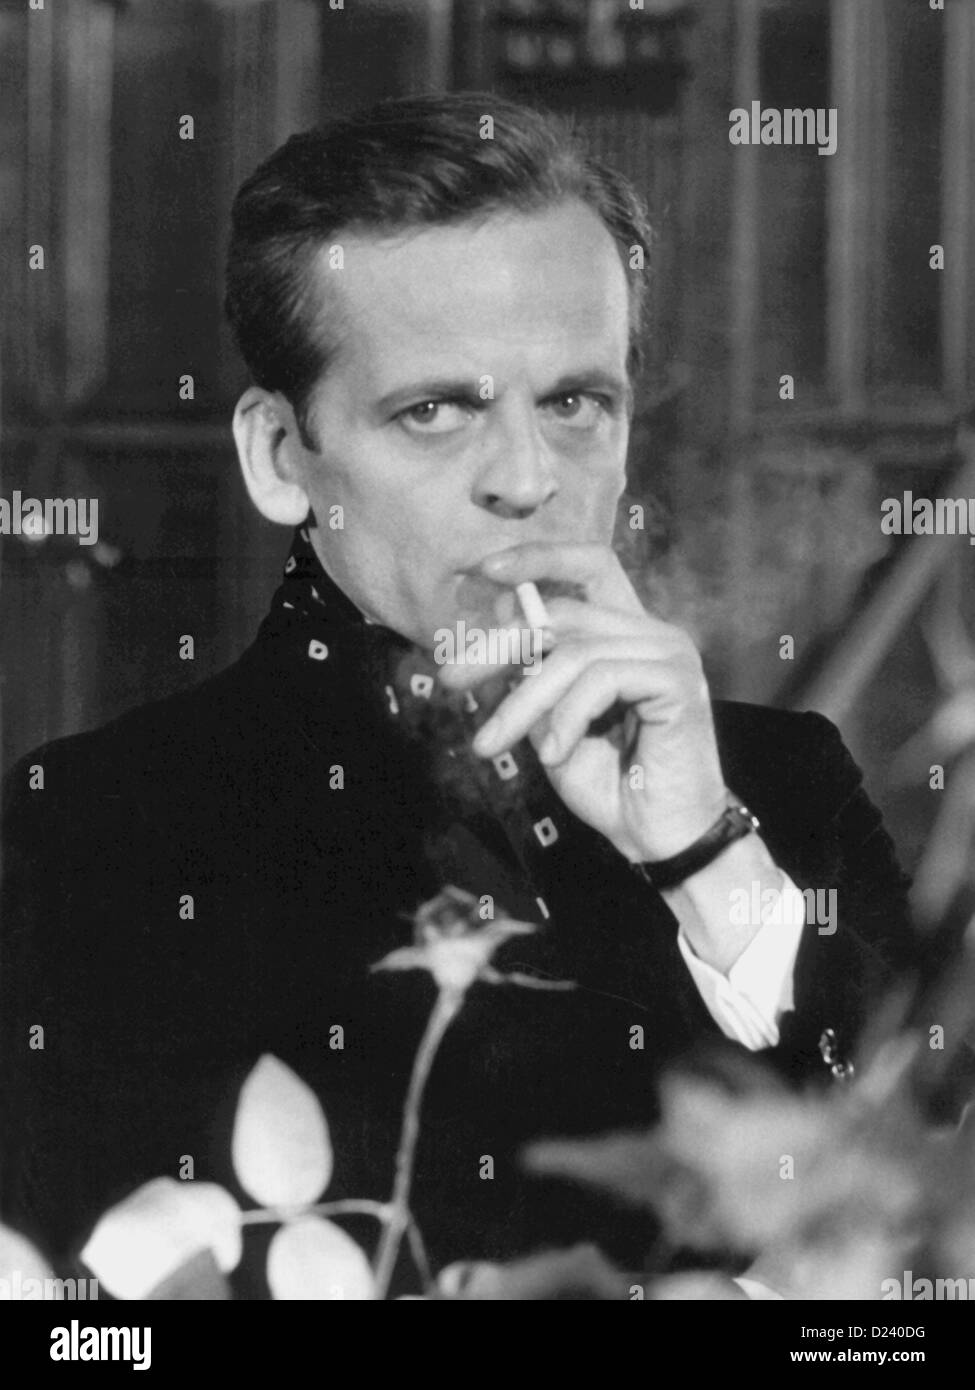 (Dpa-Dateien) - deutscher Schauspieler Klaus Kinski in einer Filmszene von Edgar Wallace film "Eine Doppia Faccia" ("Double Face"), 1969. Ein 'Enfant schreckliches"der Filmindustrie, Kinski Filme sind unter anderem"Buddy Buddy","Für ein paar Dollar mehr", sowie"Aguirre, der Zorn Gottes"(" Aguirre: The Wrath of God ") und" Nosferatu: Phantom der Nacht "("Nosferatu the Vampire"). Kinski war unter dem Namen Nikolaus Günther Nakszynski am 18. Oktober 1926 in Danzig, Deutschland (jetzt Gdansk, Polen) geboren und starb am 23. November 1991 in Lagunitas, Kalifornien, an einem Herzinfarkt. Stockfoto